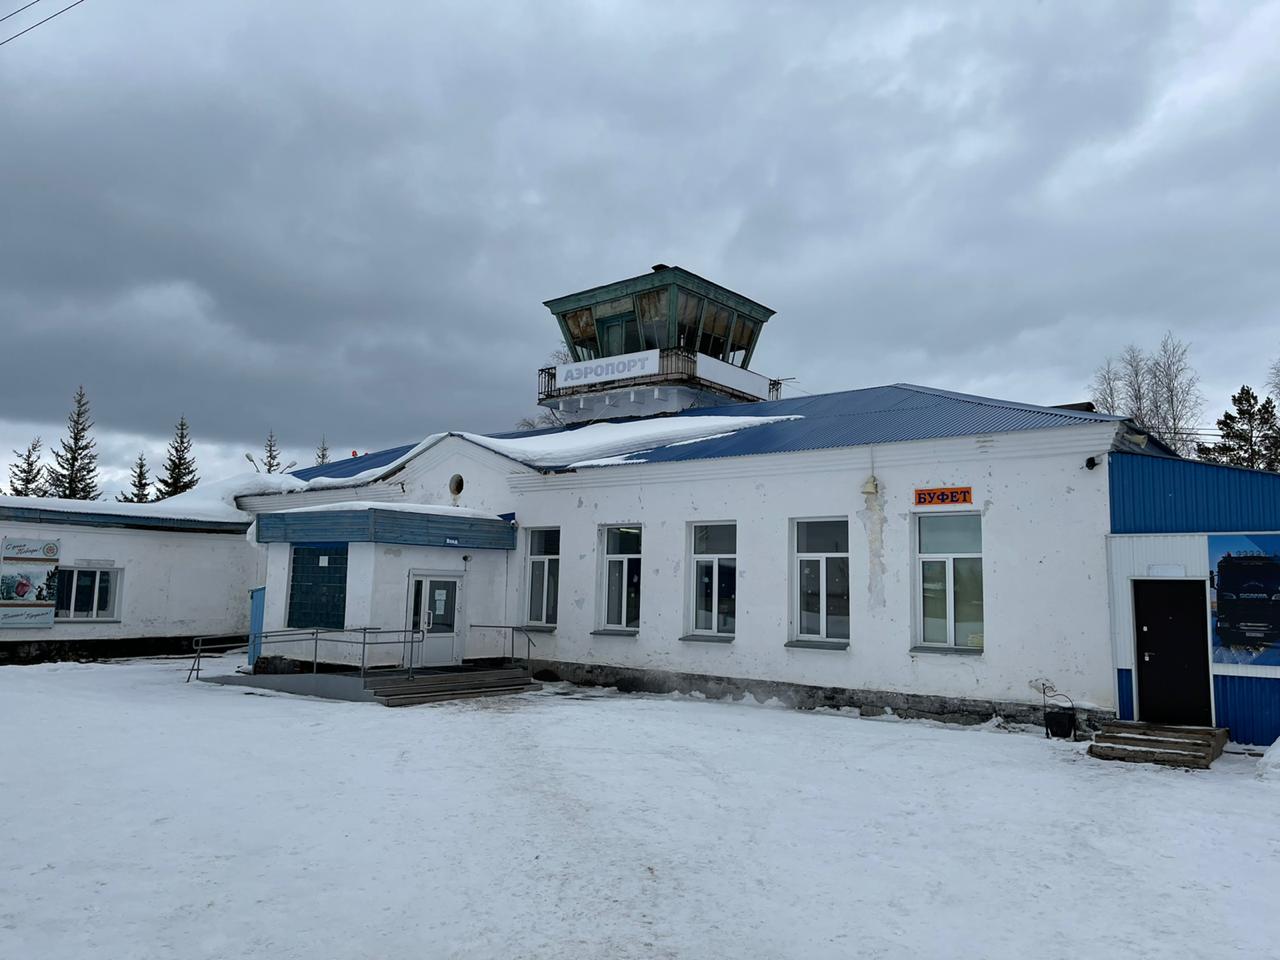 Авиасообщение между Иркутском и Усть-Кутом возобновили 22 ноября